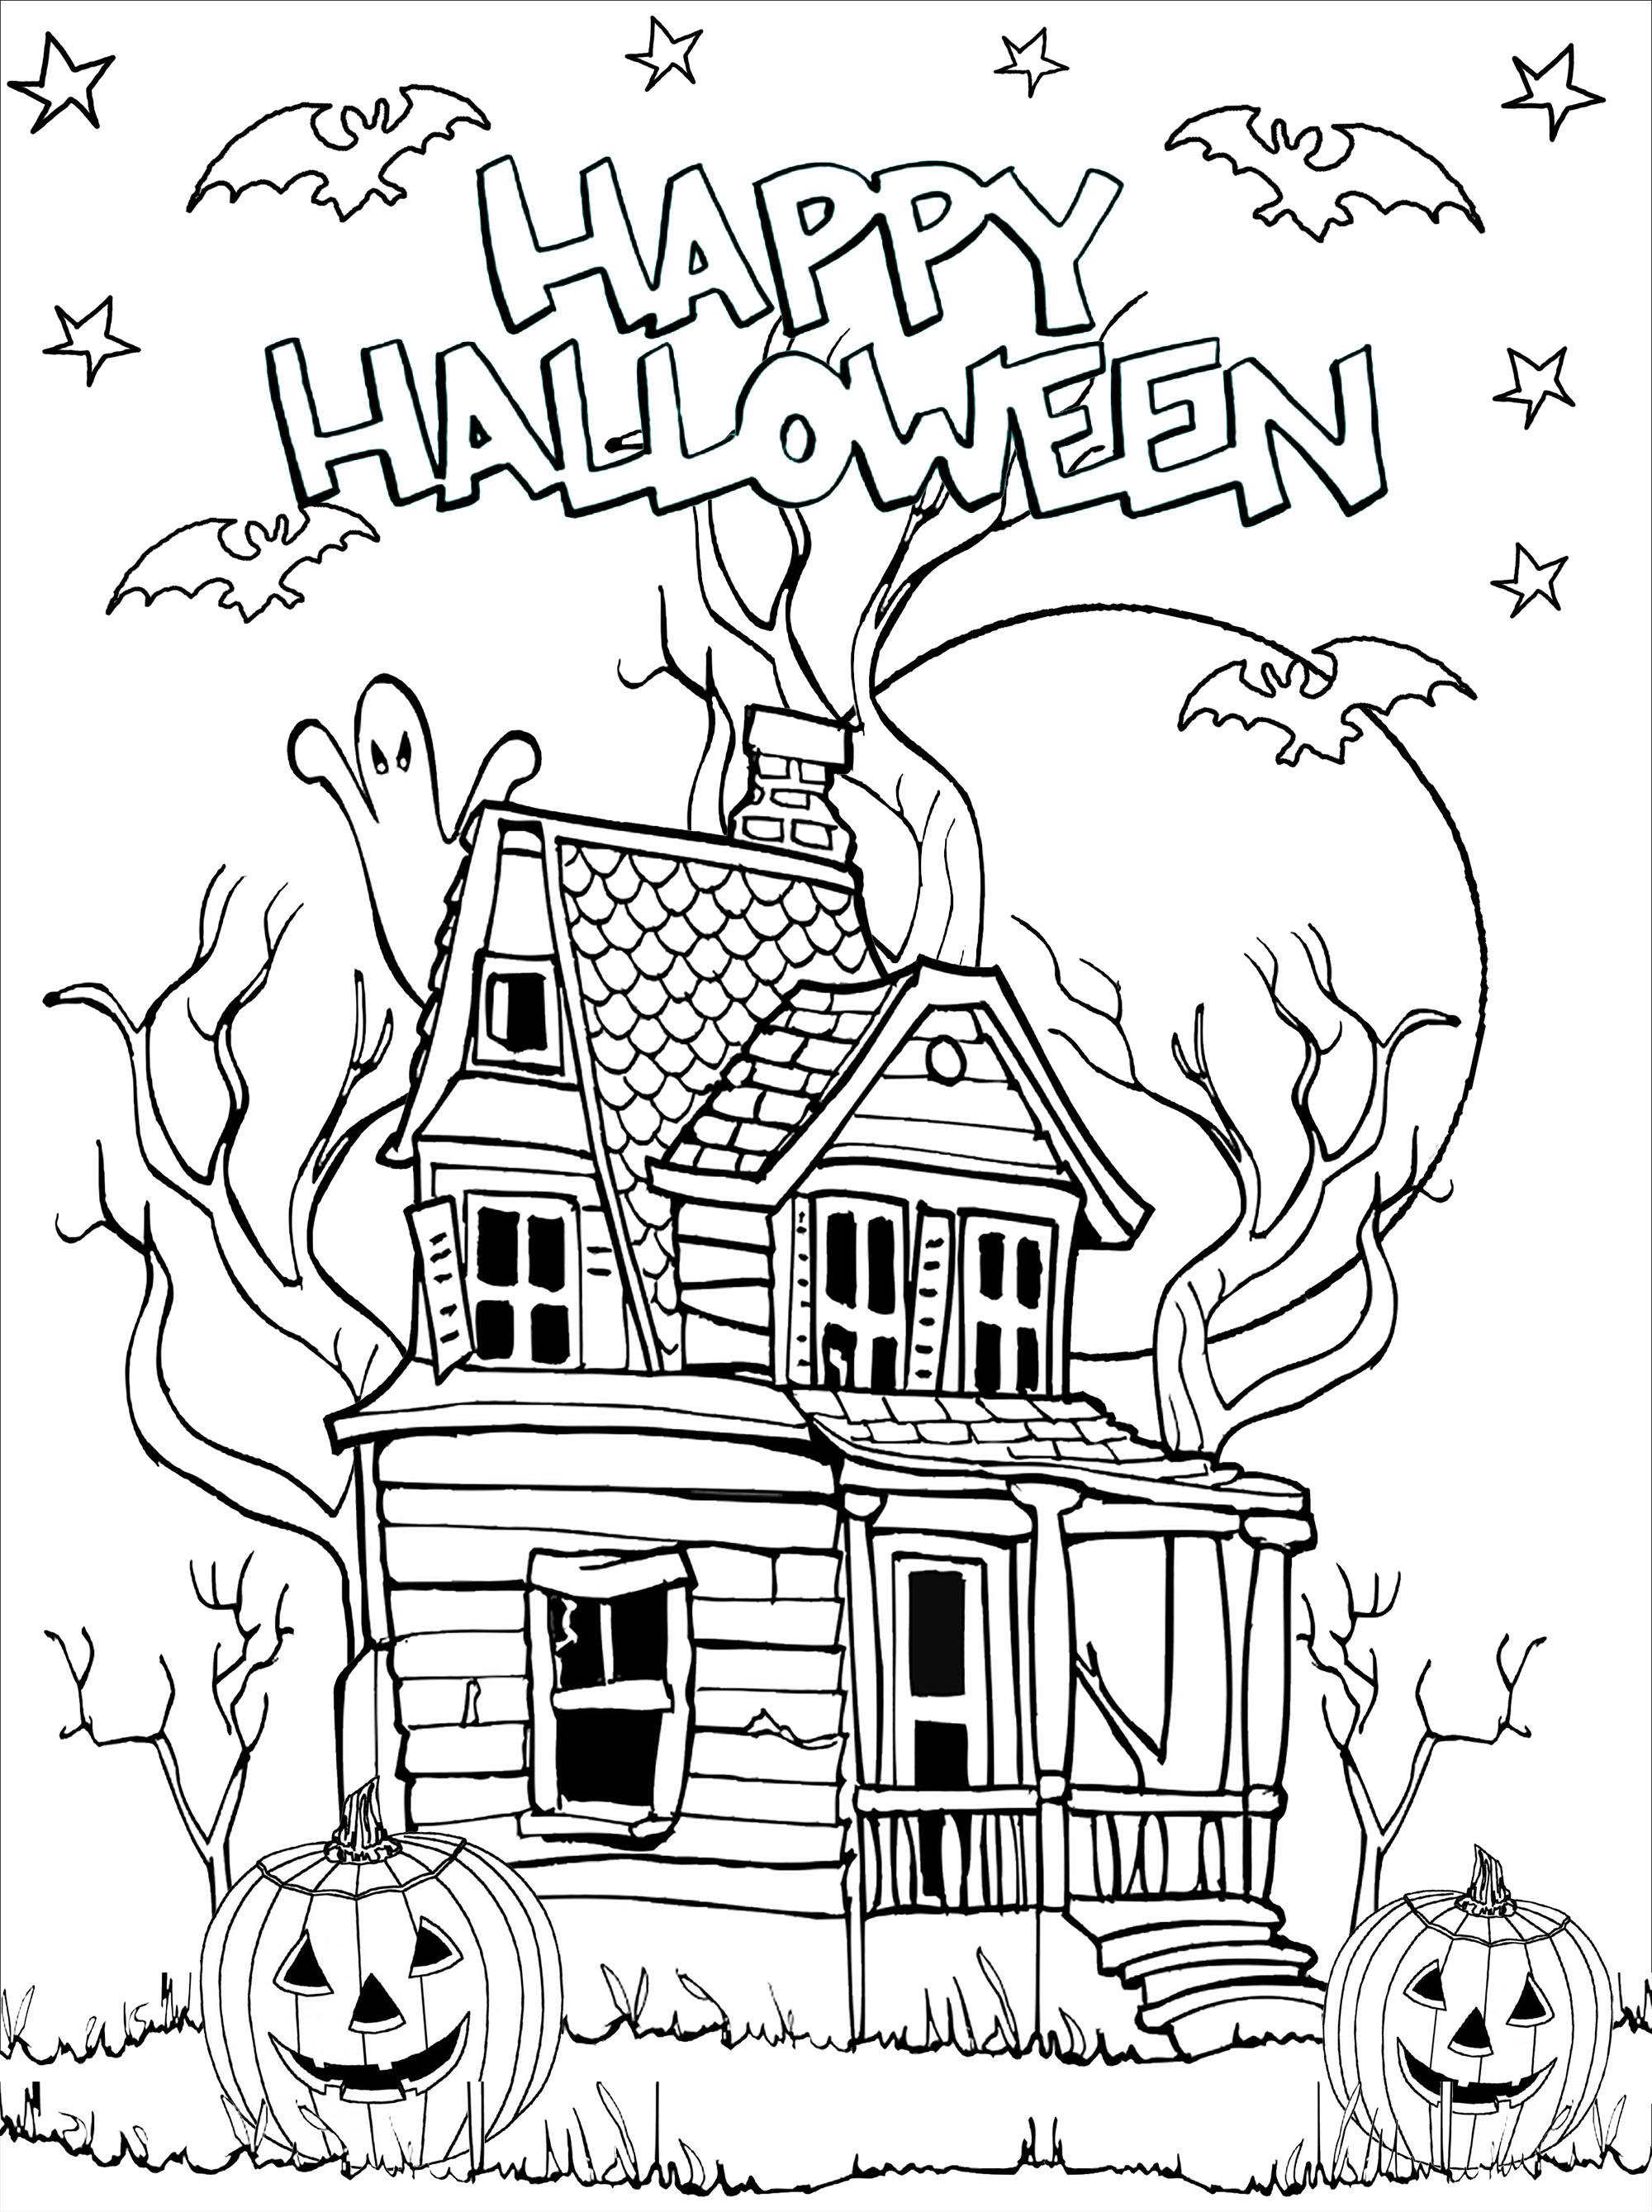 Casa encantada para colorear con calabazas (Jack-o'-lantern), murciélagos, luna y estrellas. Los espeluznantes detalles hacen que esta casa encantada sea muy realista.
